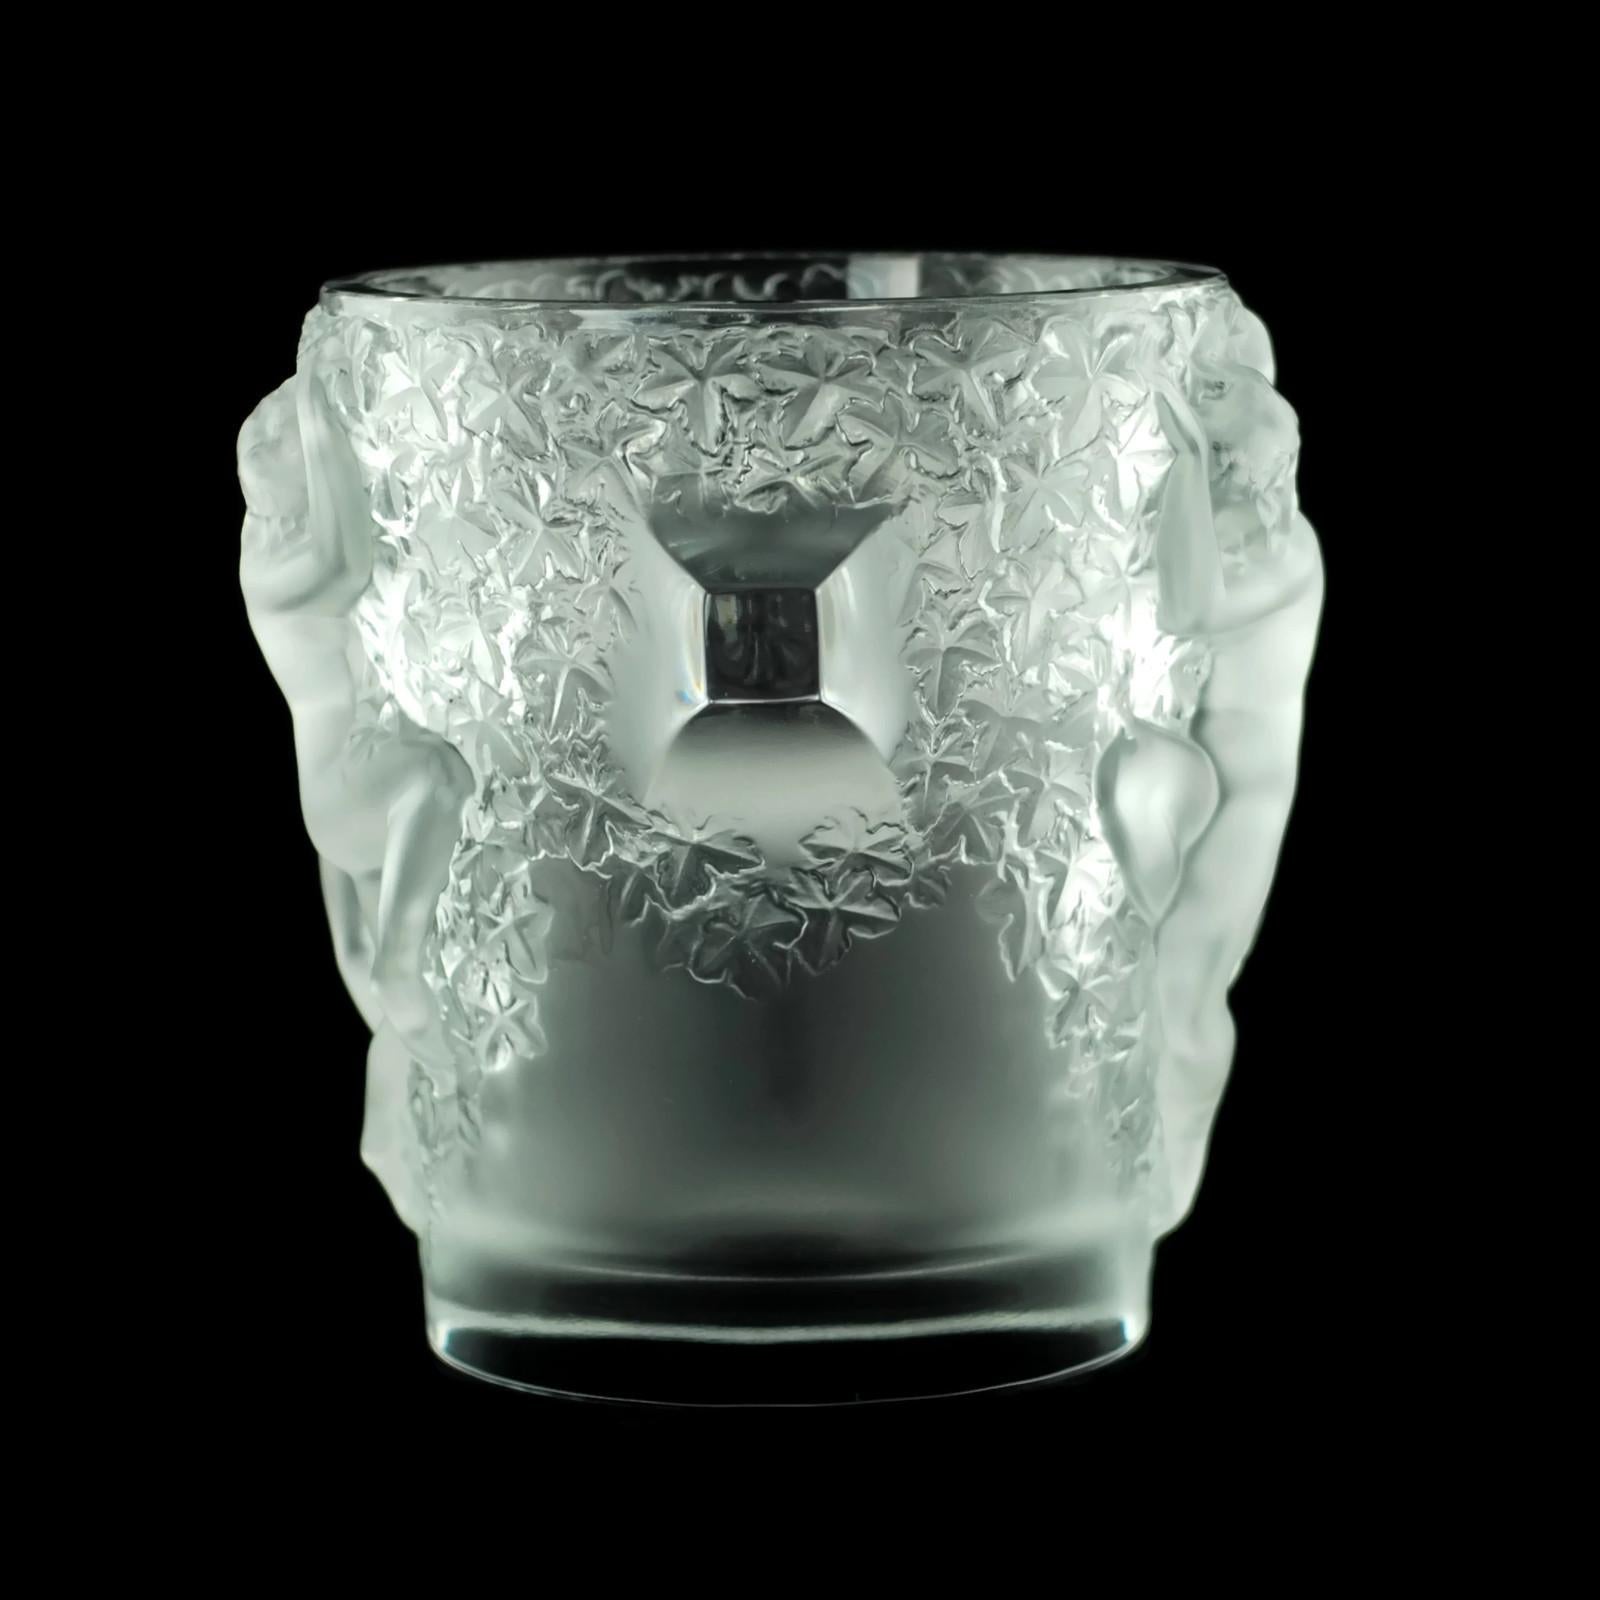 Ce seau à champagne/seau à glace en cristal français a été conçu au milieu des années 1950 par Marc Lalique. Le dessin s'intitule Ganymède:: d'après le jeune homme mythologique enlevé par Zeus et qui devint son échanson. L'extérieur du seau à glace